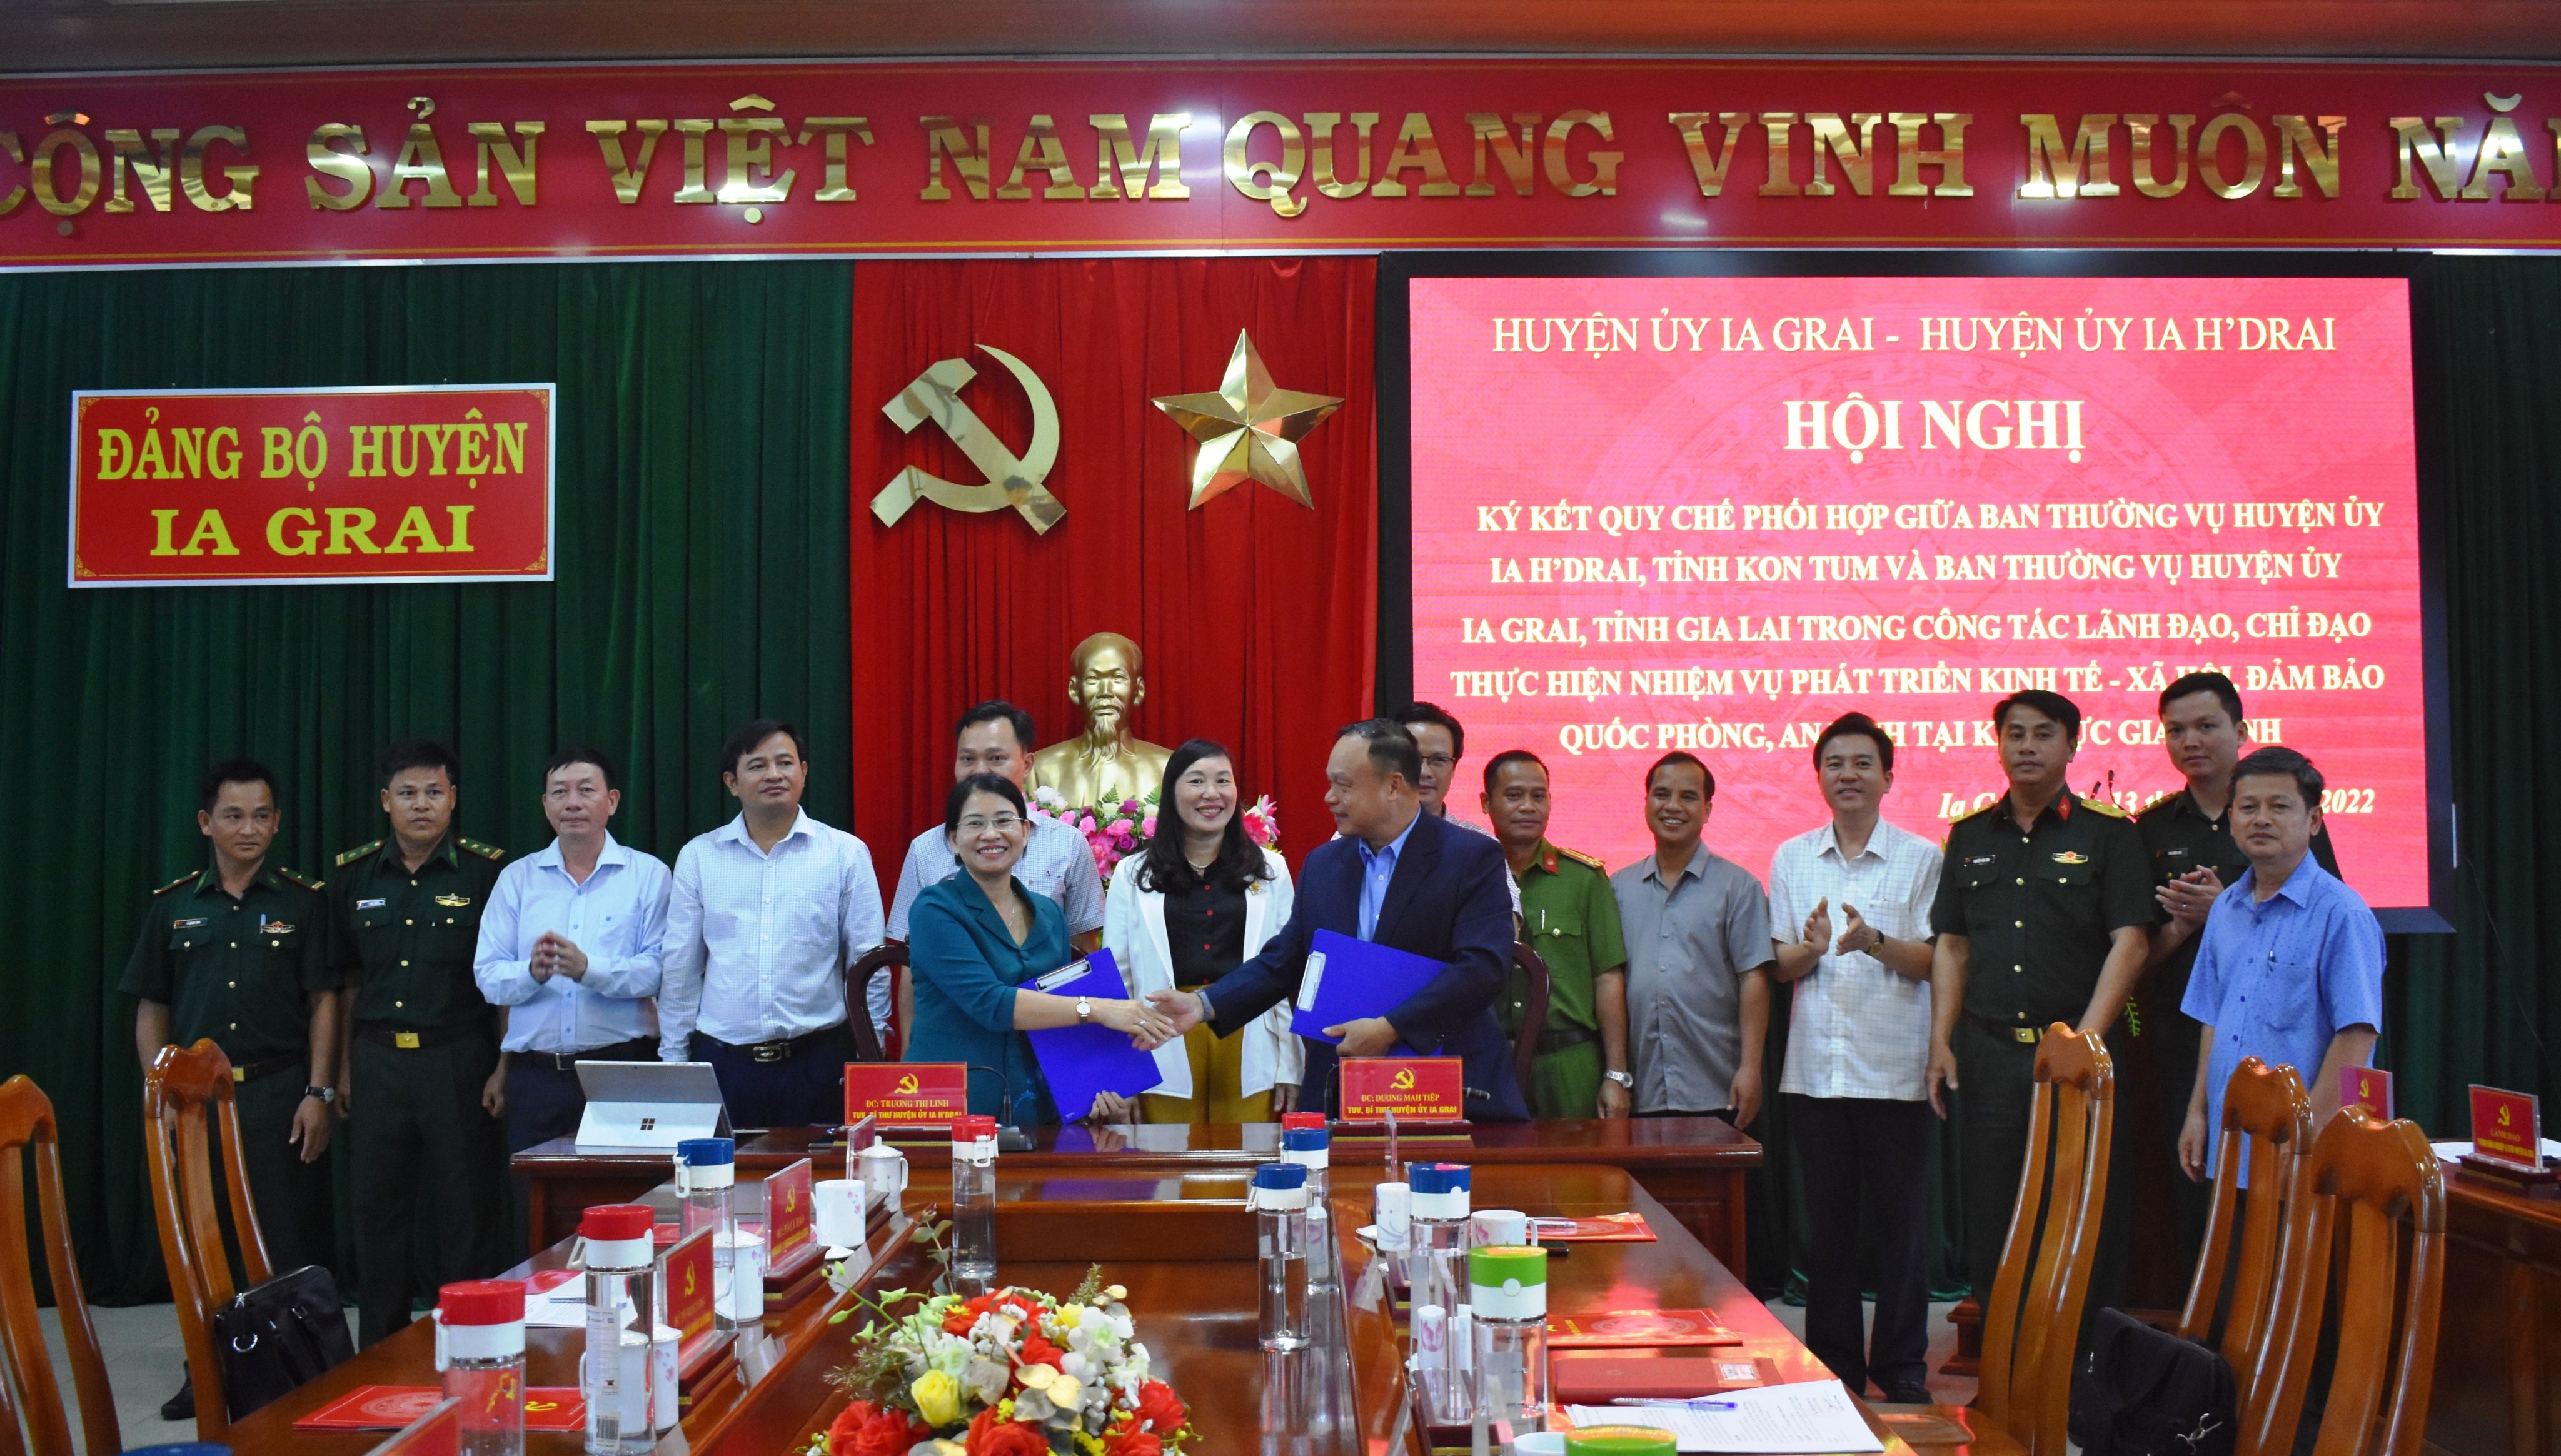 Article Huyện Ia Grai (tỉnh Gia Lai) và Ia H`Drai (tỉnh Kon Tum) ký kết quy chế phối hợp lãnh đạo thực hiện nhiệm vụ chính trị khu vực giáp ranh.